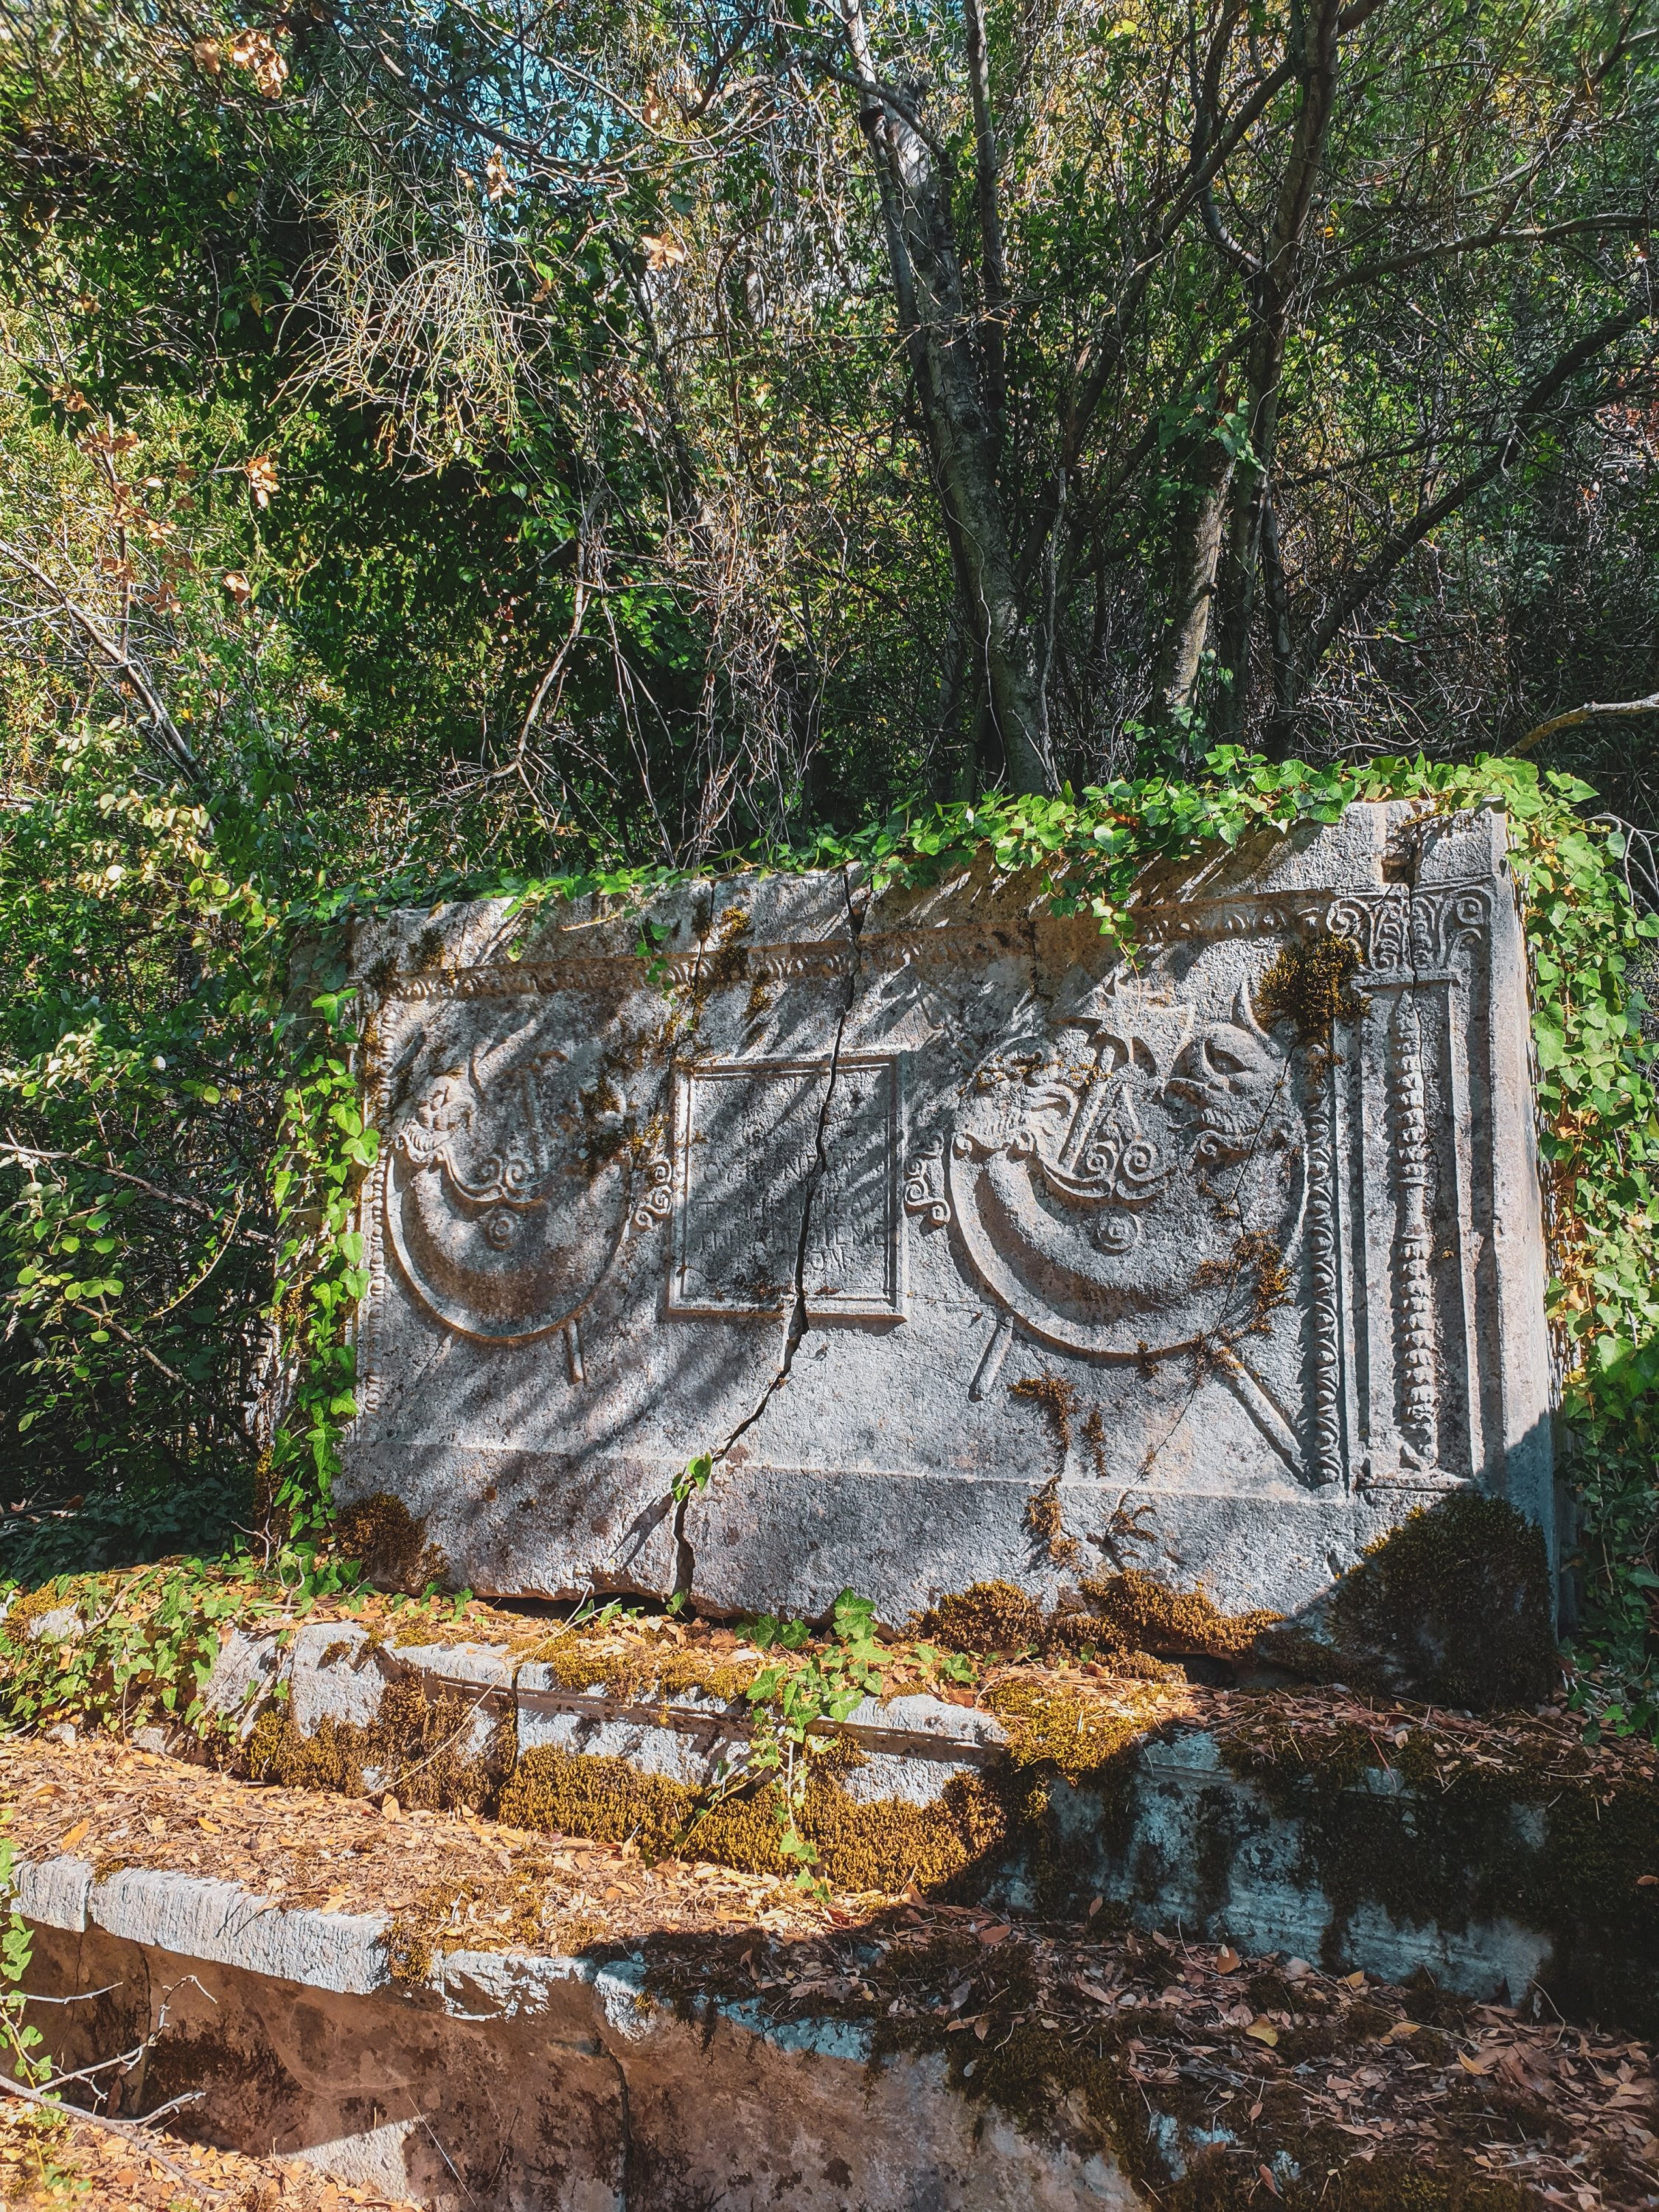   Il existe de nombreuses tombes historiques dispersées sur le terrain de Termessos.  (Photo par Argun Konuk)